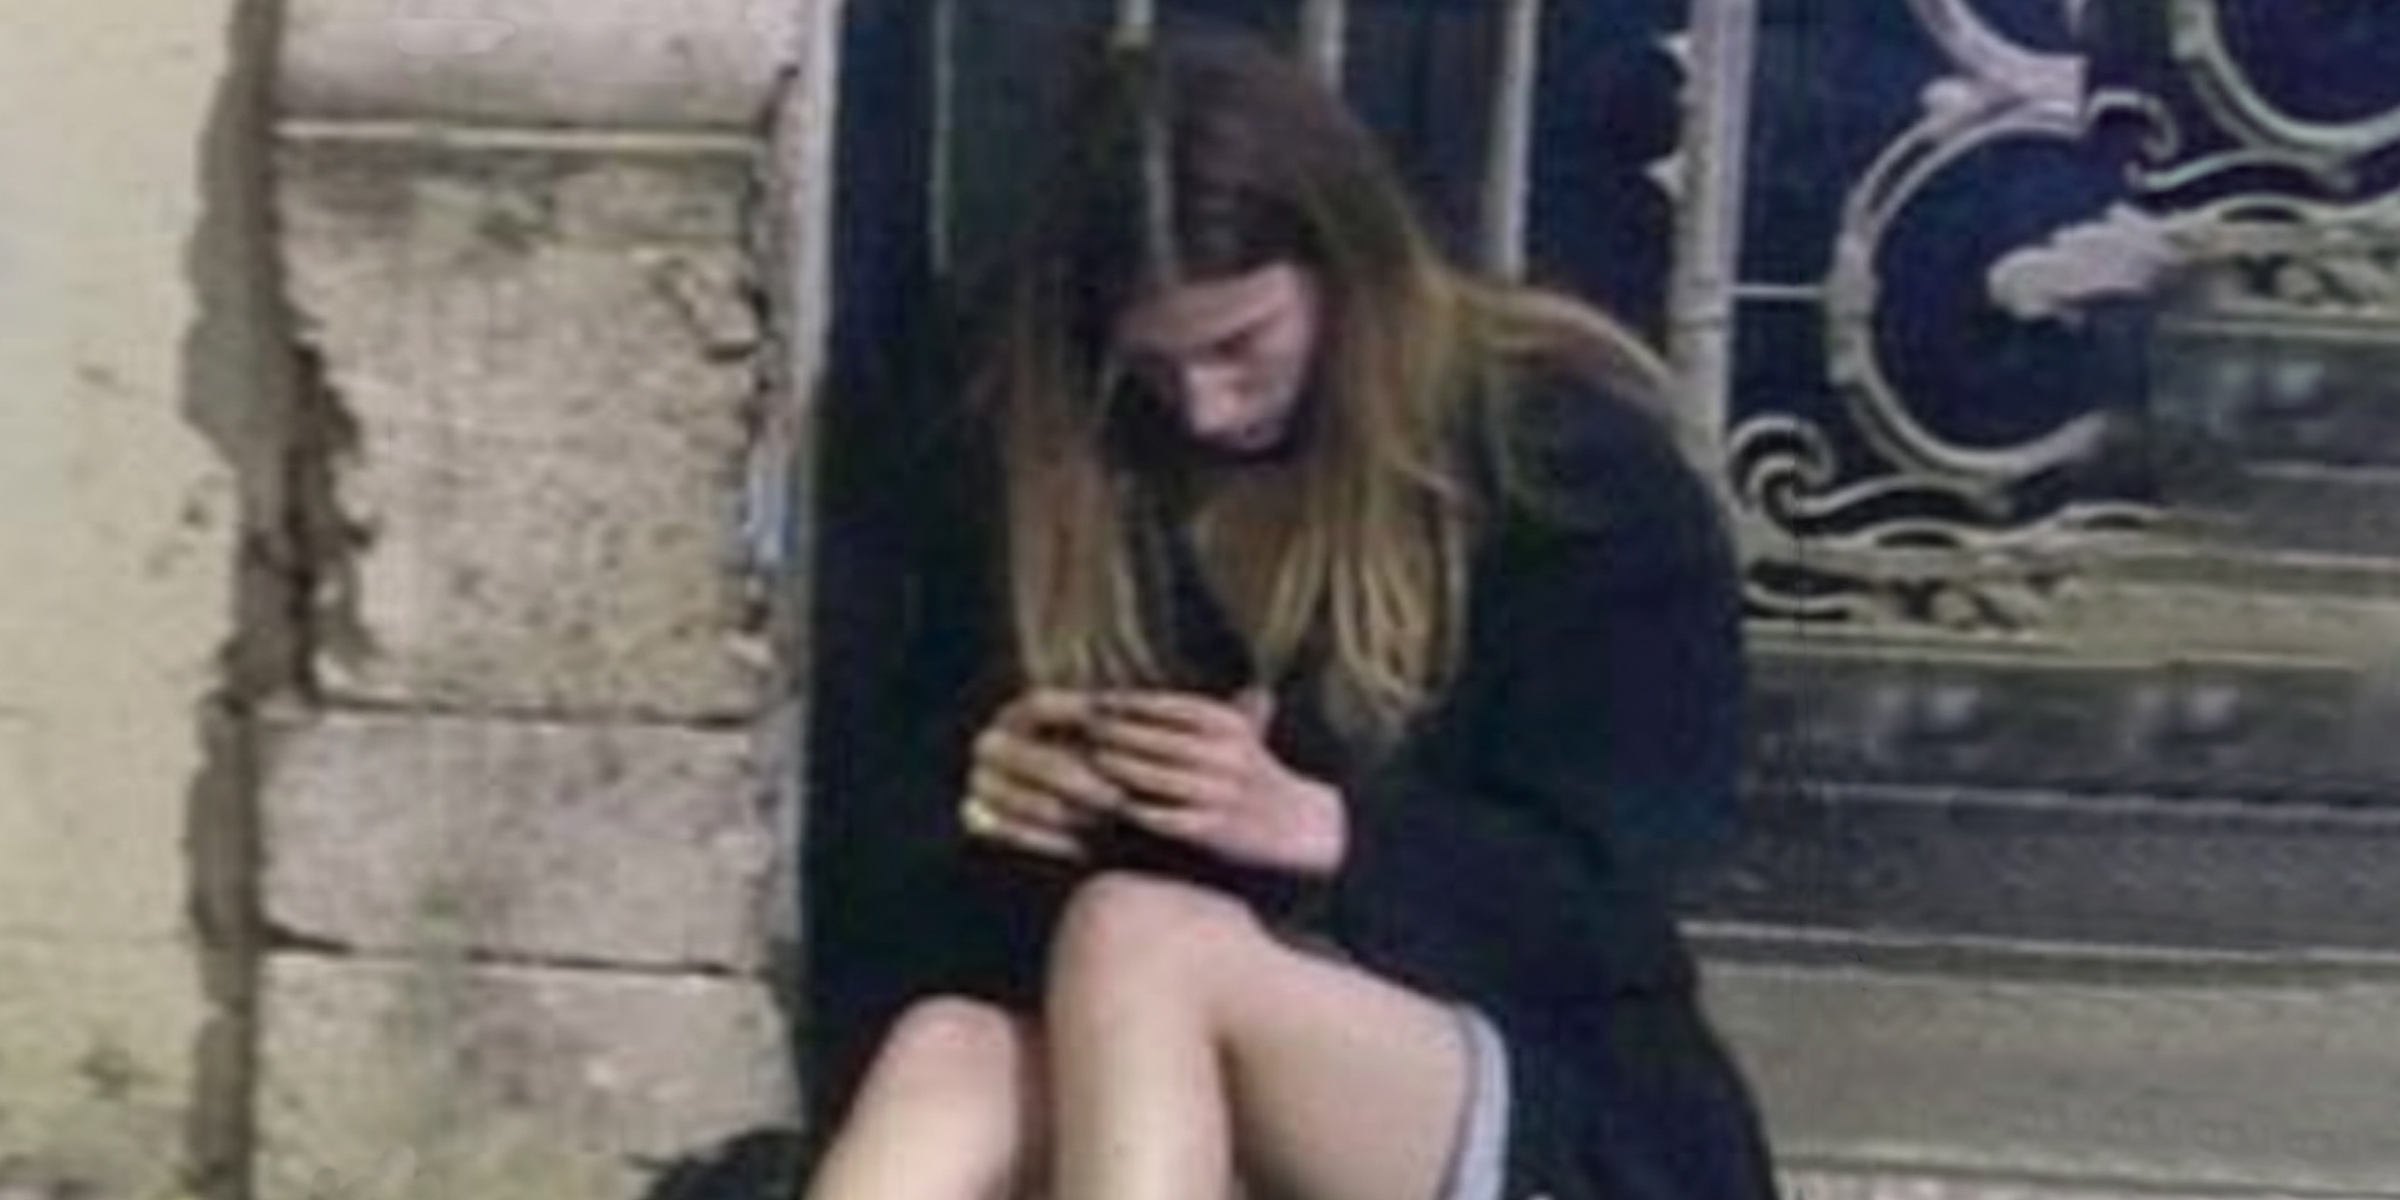 Obdachloses Mädchen, das alleine sitzt | Quelle: Amomama